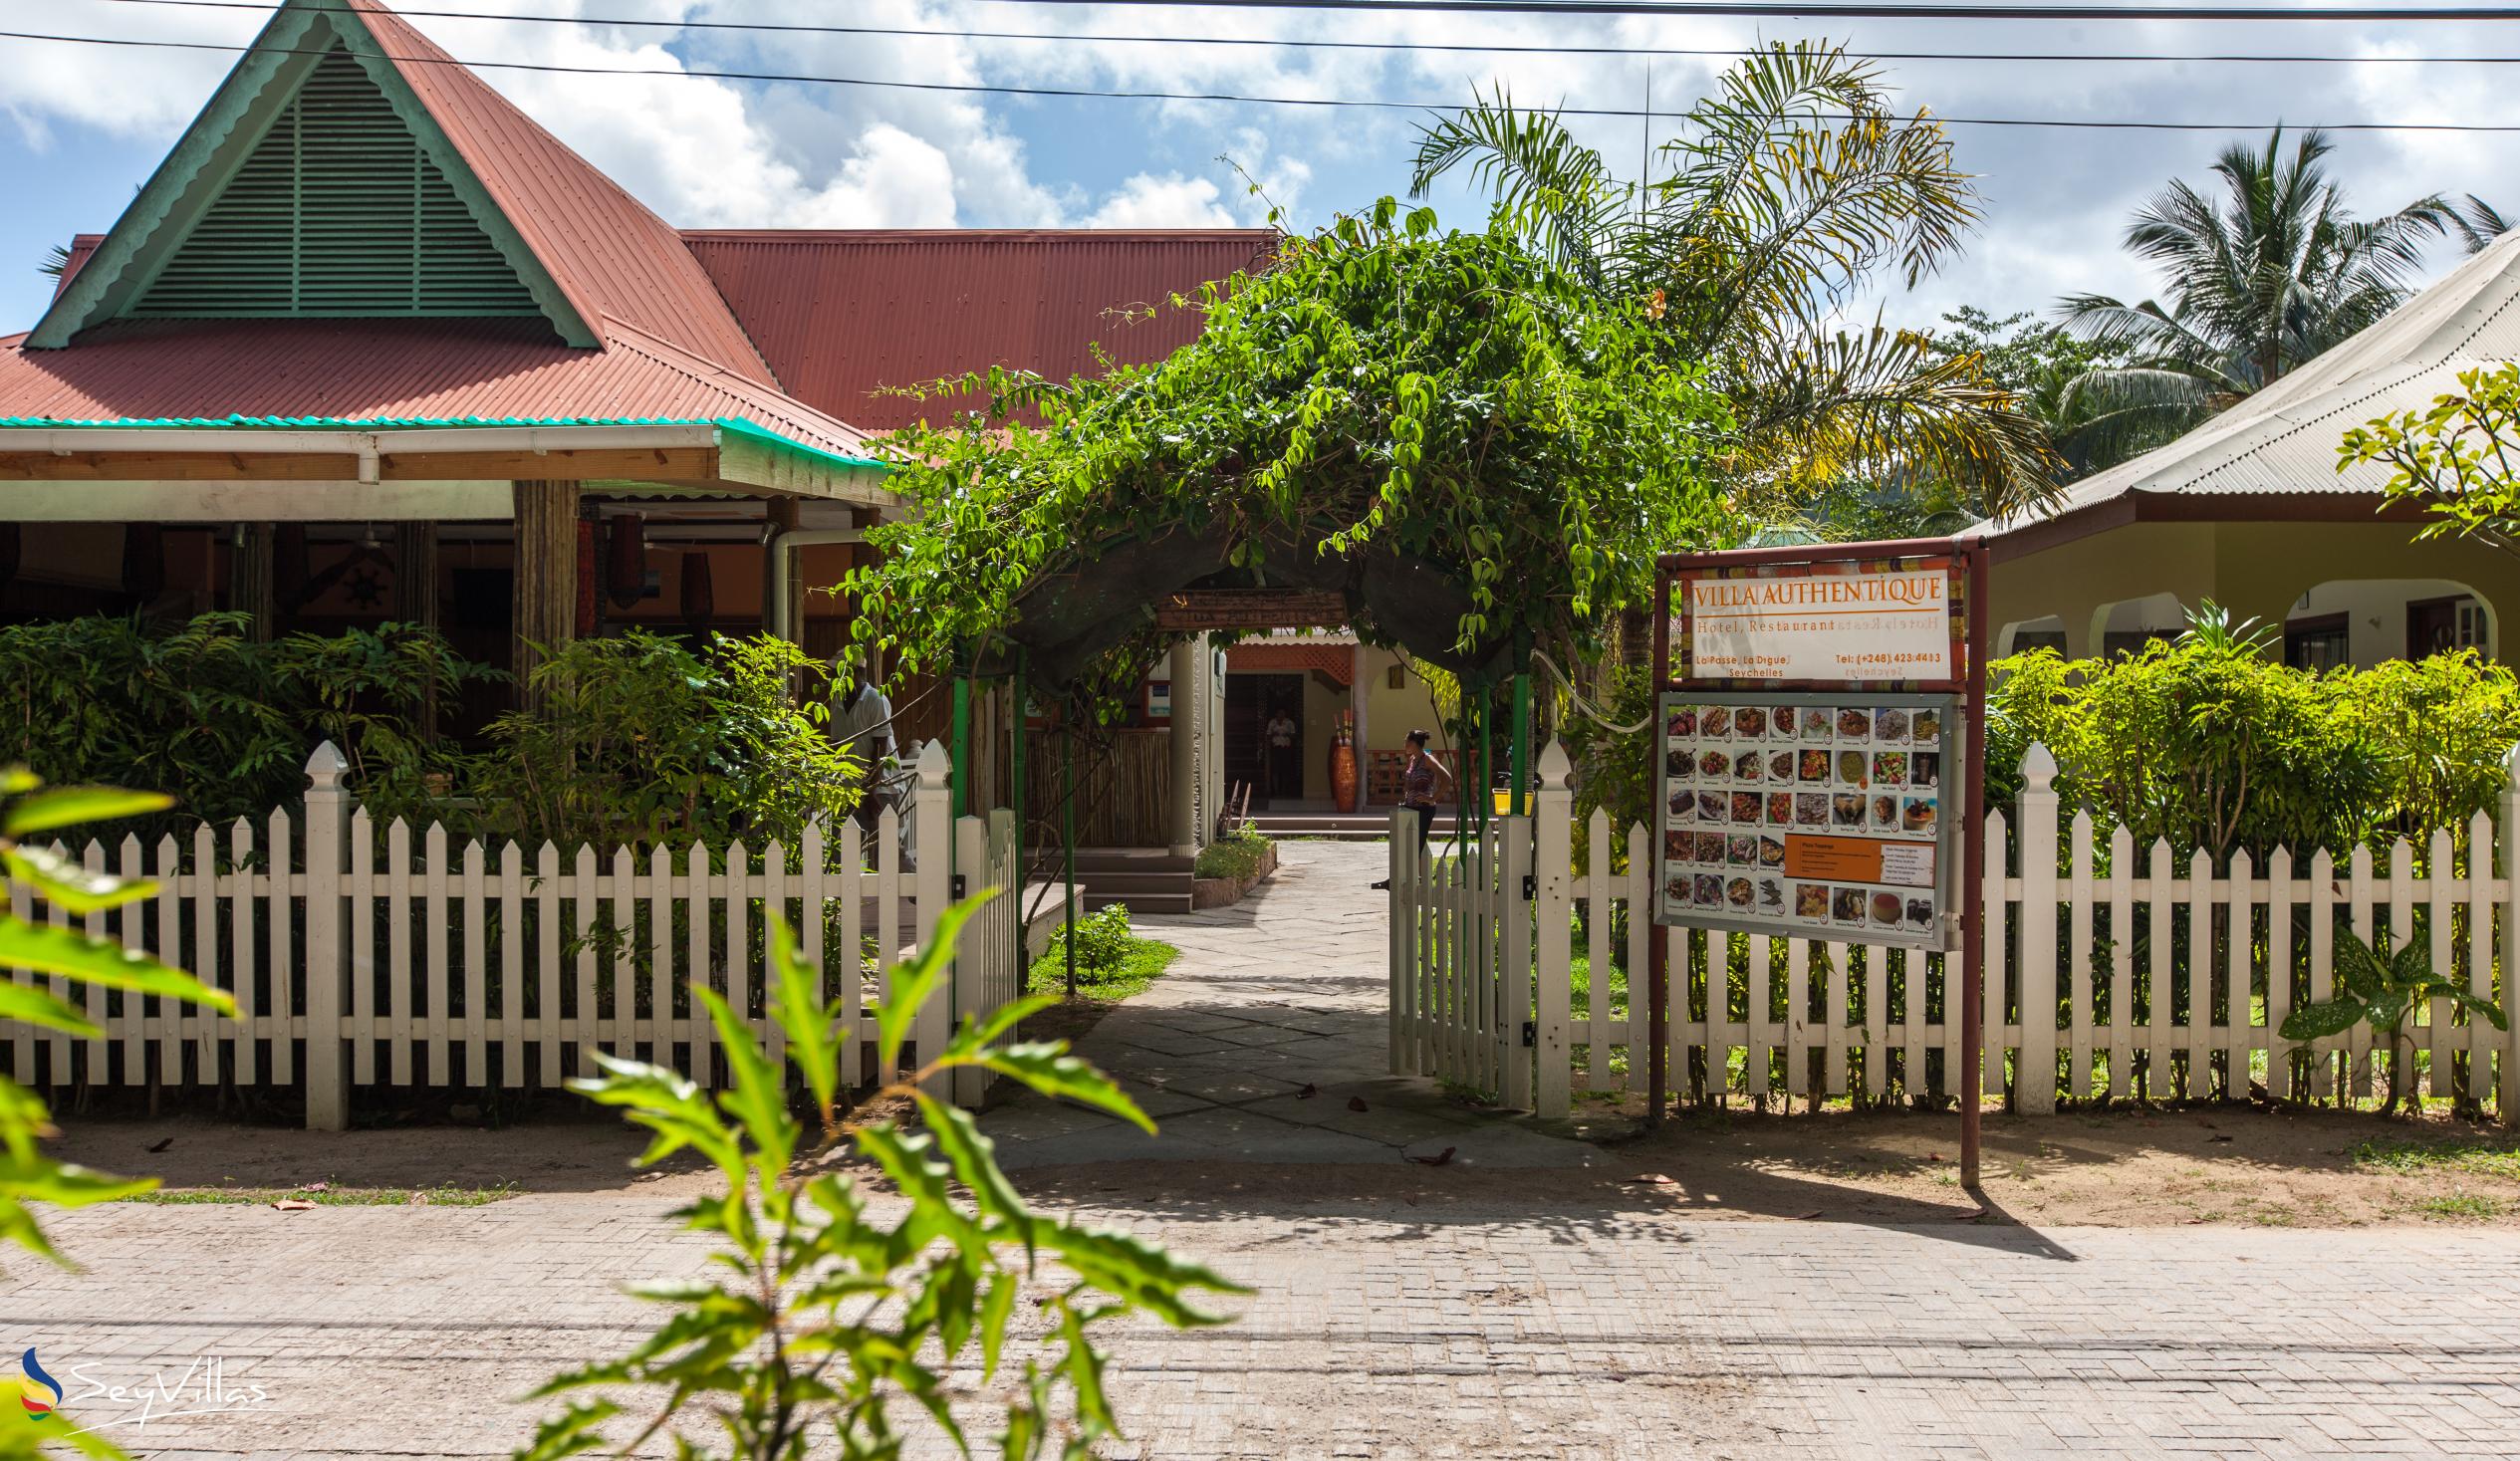 Foto 1: Villa Authentique - Aussenbereich - La Digue (Seychellen)